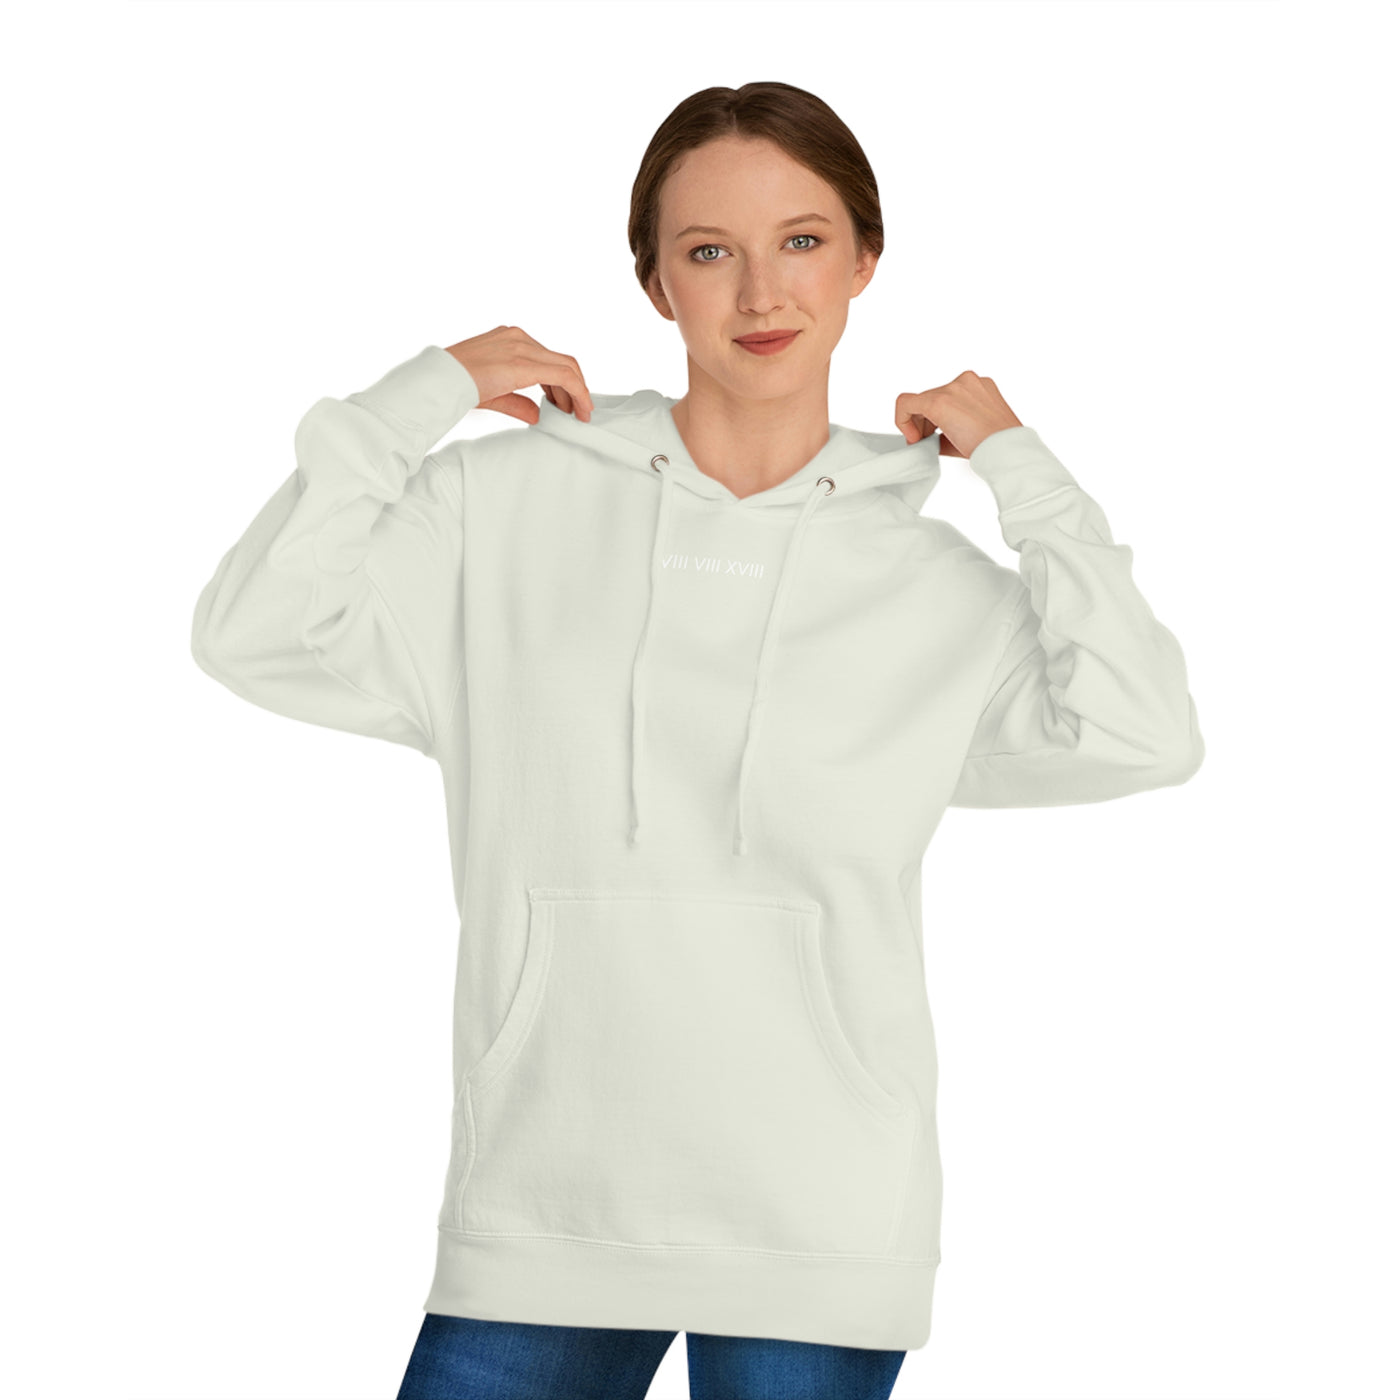 Unisex Hooded Sweatshirt